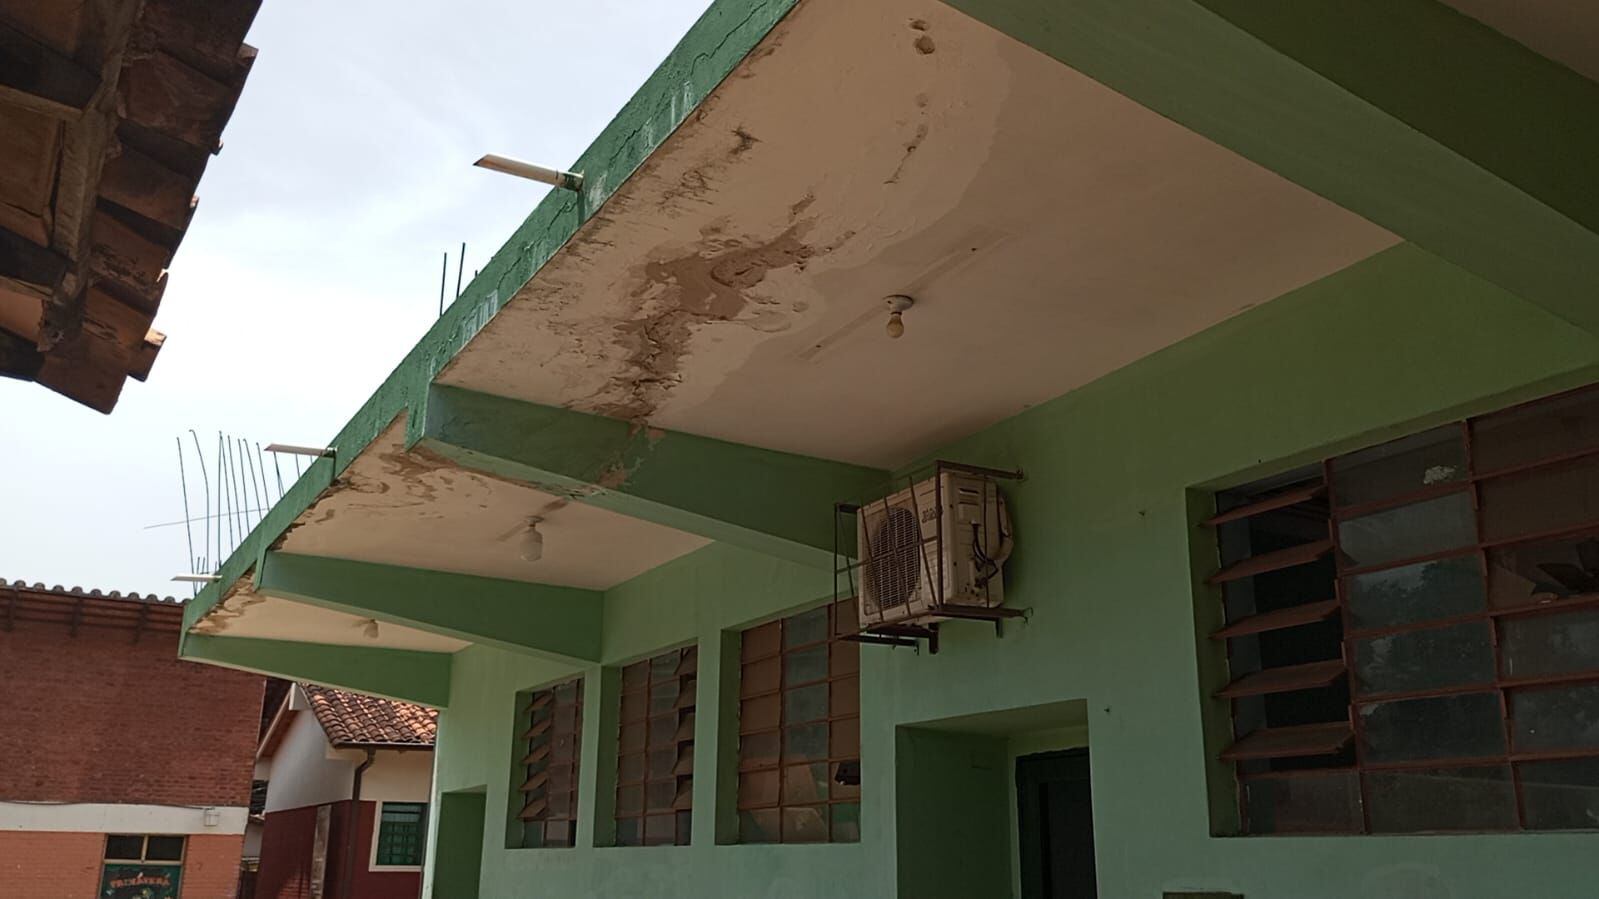 Techo con filtraciones  y humedad, así como ventanas con vidrios rotos se observan actualmente en el local educativo.